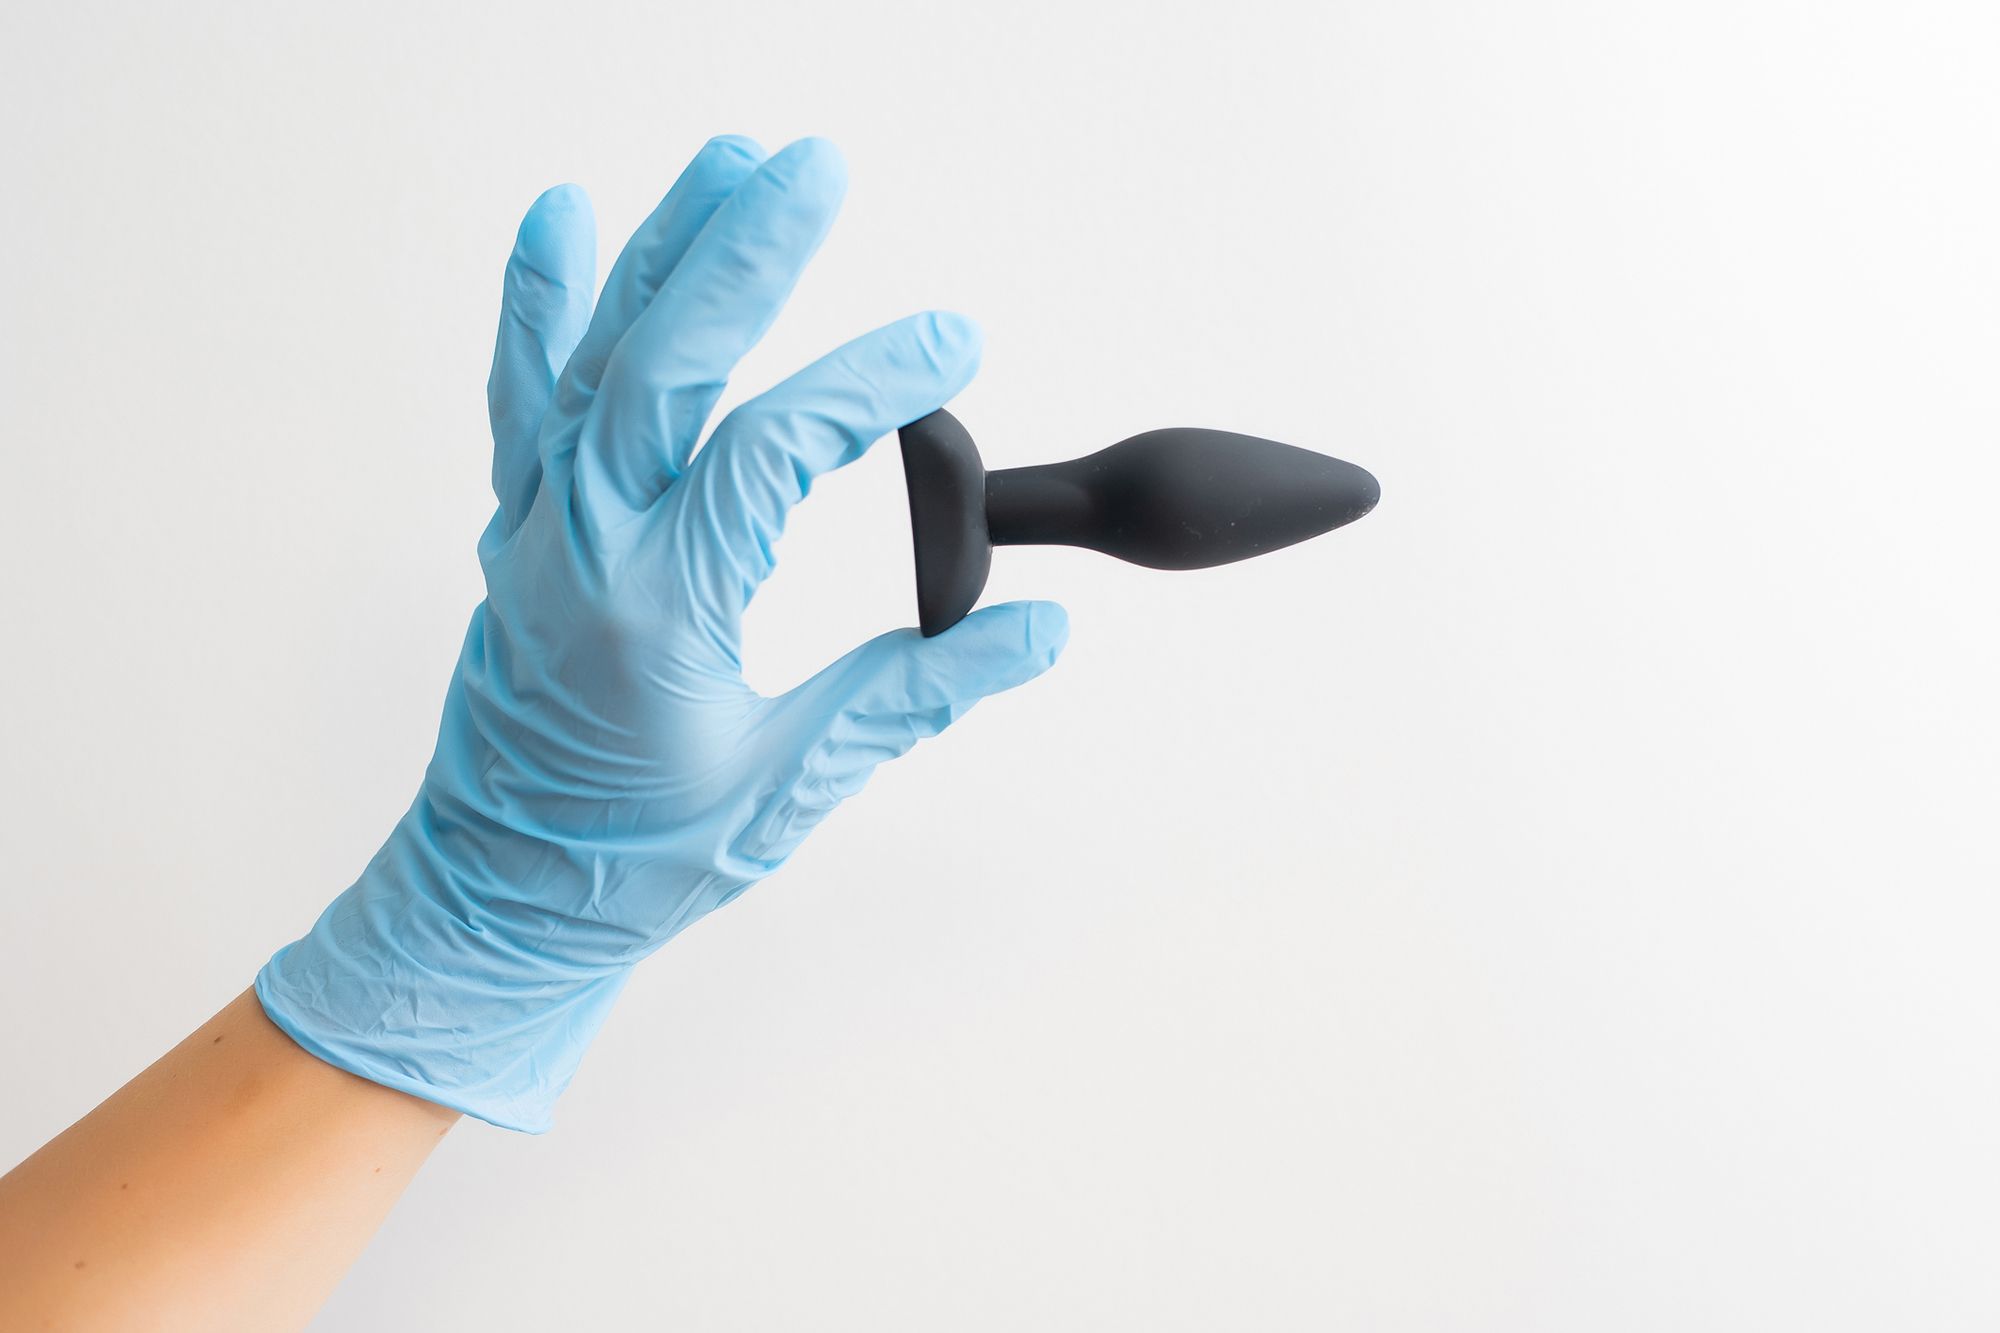 Hand im Latex-Handschuh hält einen schwarzen Analplug